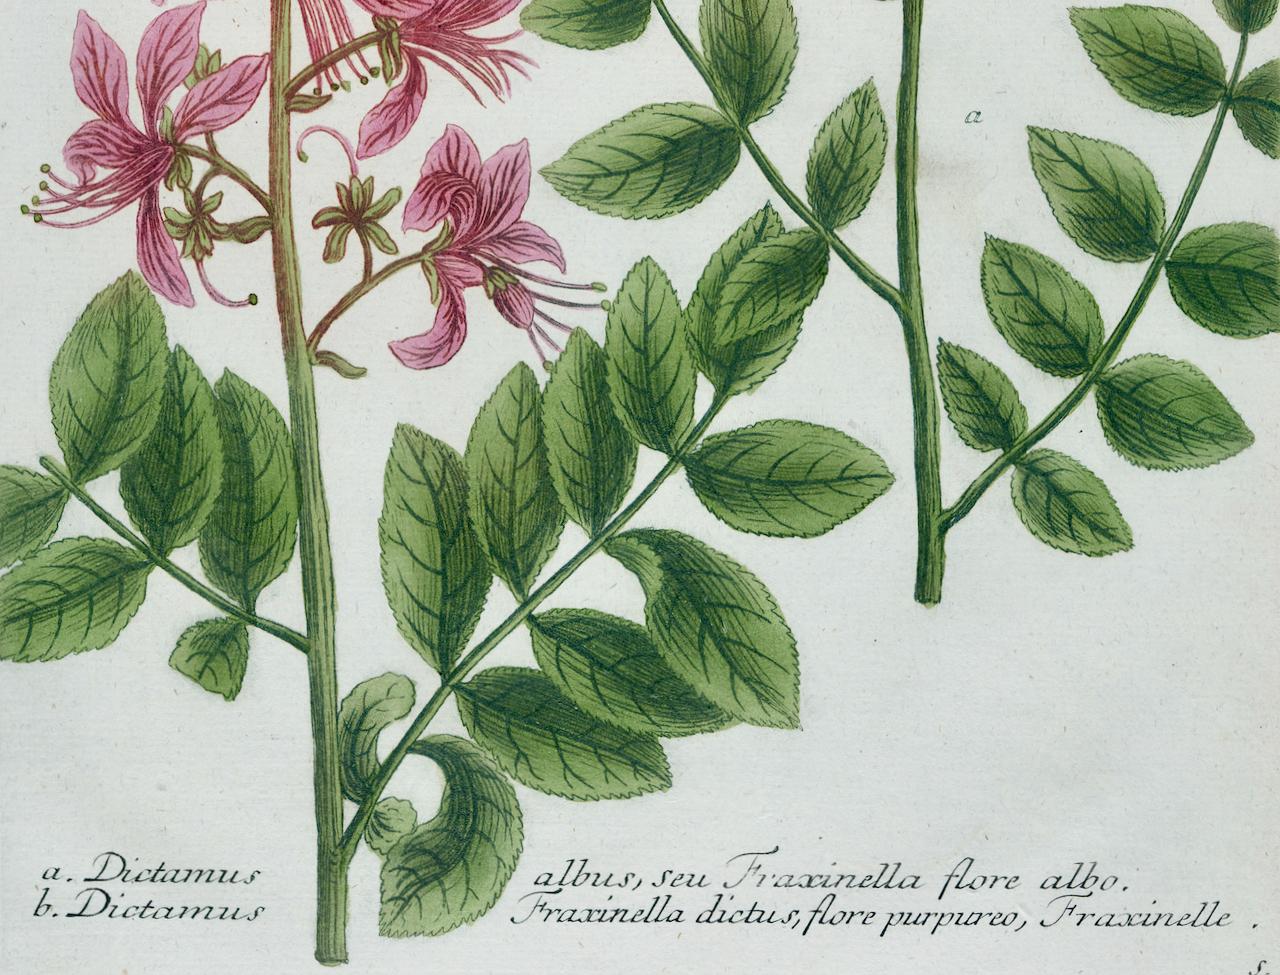 Il s'agit d'une gravure botanique ancienne colorée en mezzotinte et au trait représentant des plantes à gaz en fleurs ou des buissons ardents et des fraxinelles, qui est finie avec un coloriage à la main. Elle est intitulée 